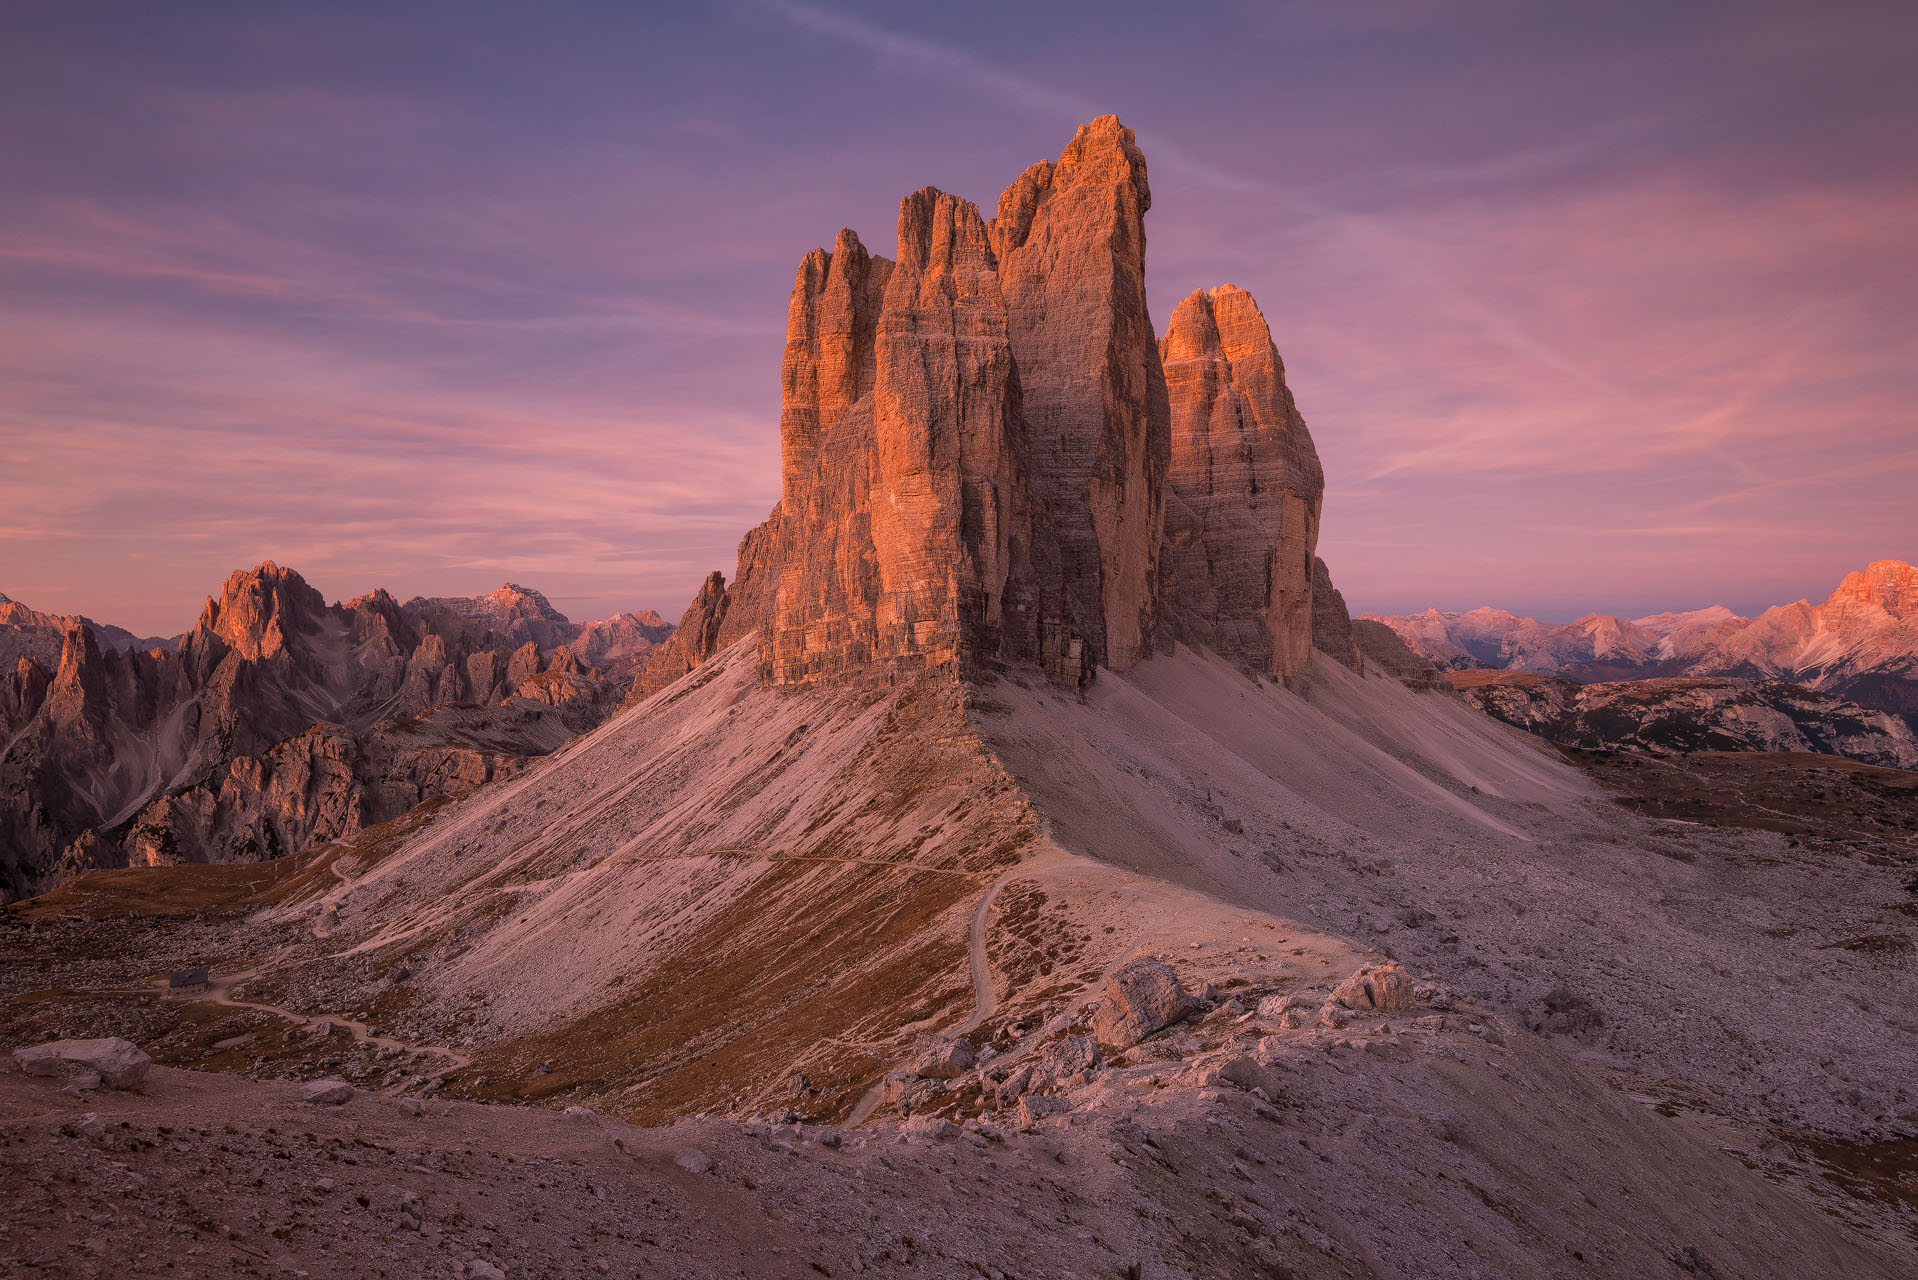 L'enrosadira sulle Tre Cime di Lavaredo, il fenomeno per cui le Dolomiti si colorano di tinte rossastre (BL)